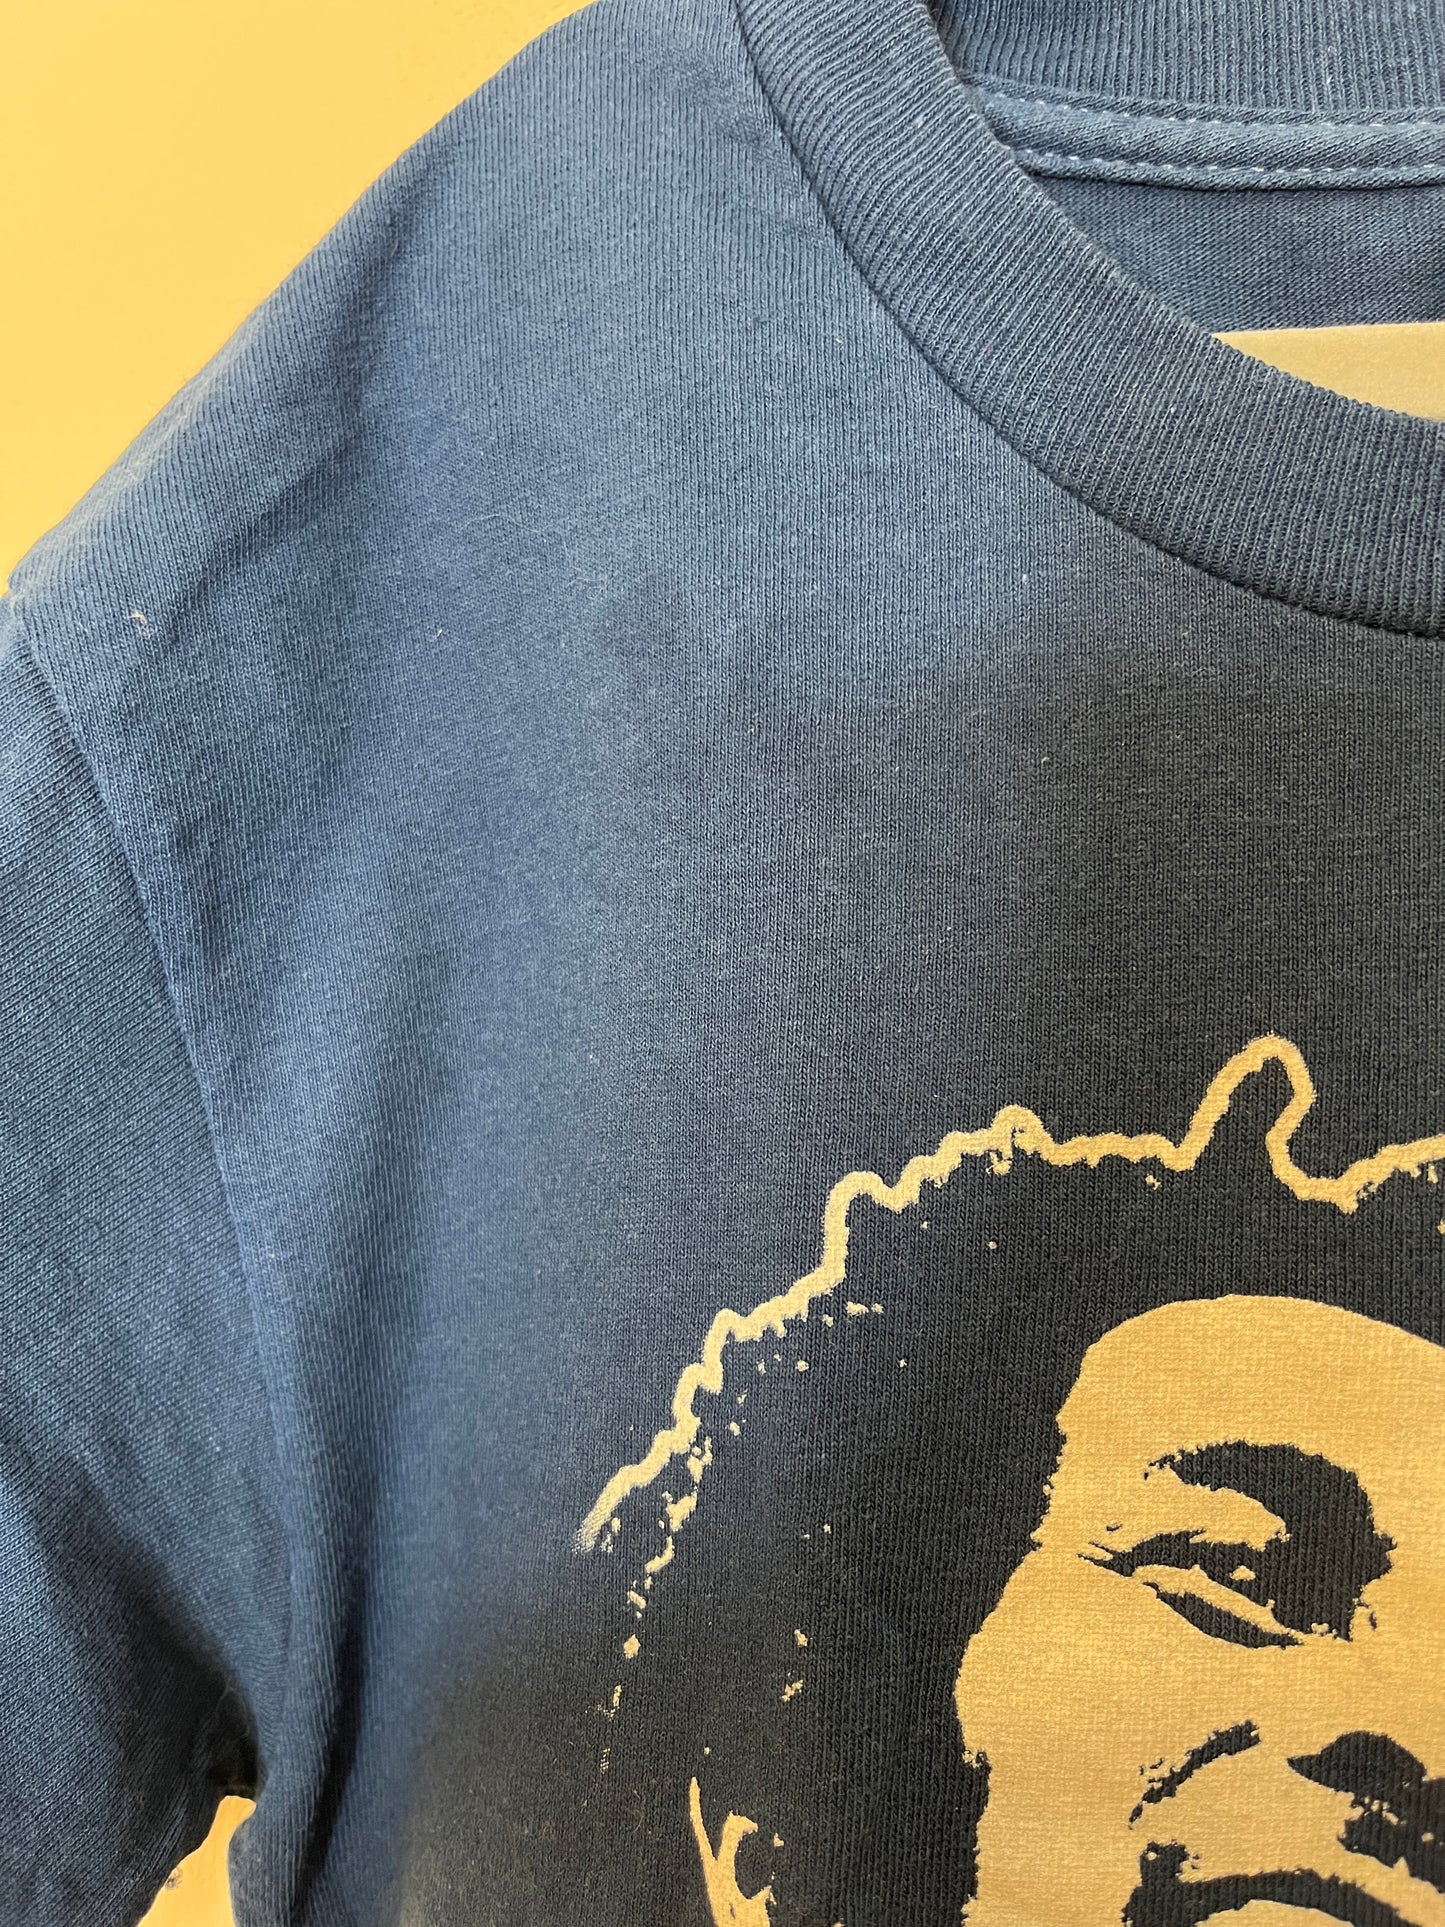 Bob Marley 'One Love' T-Shirt (8-10)